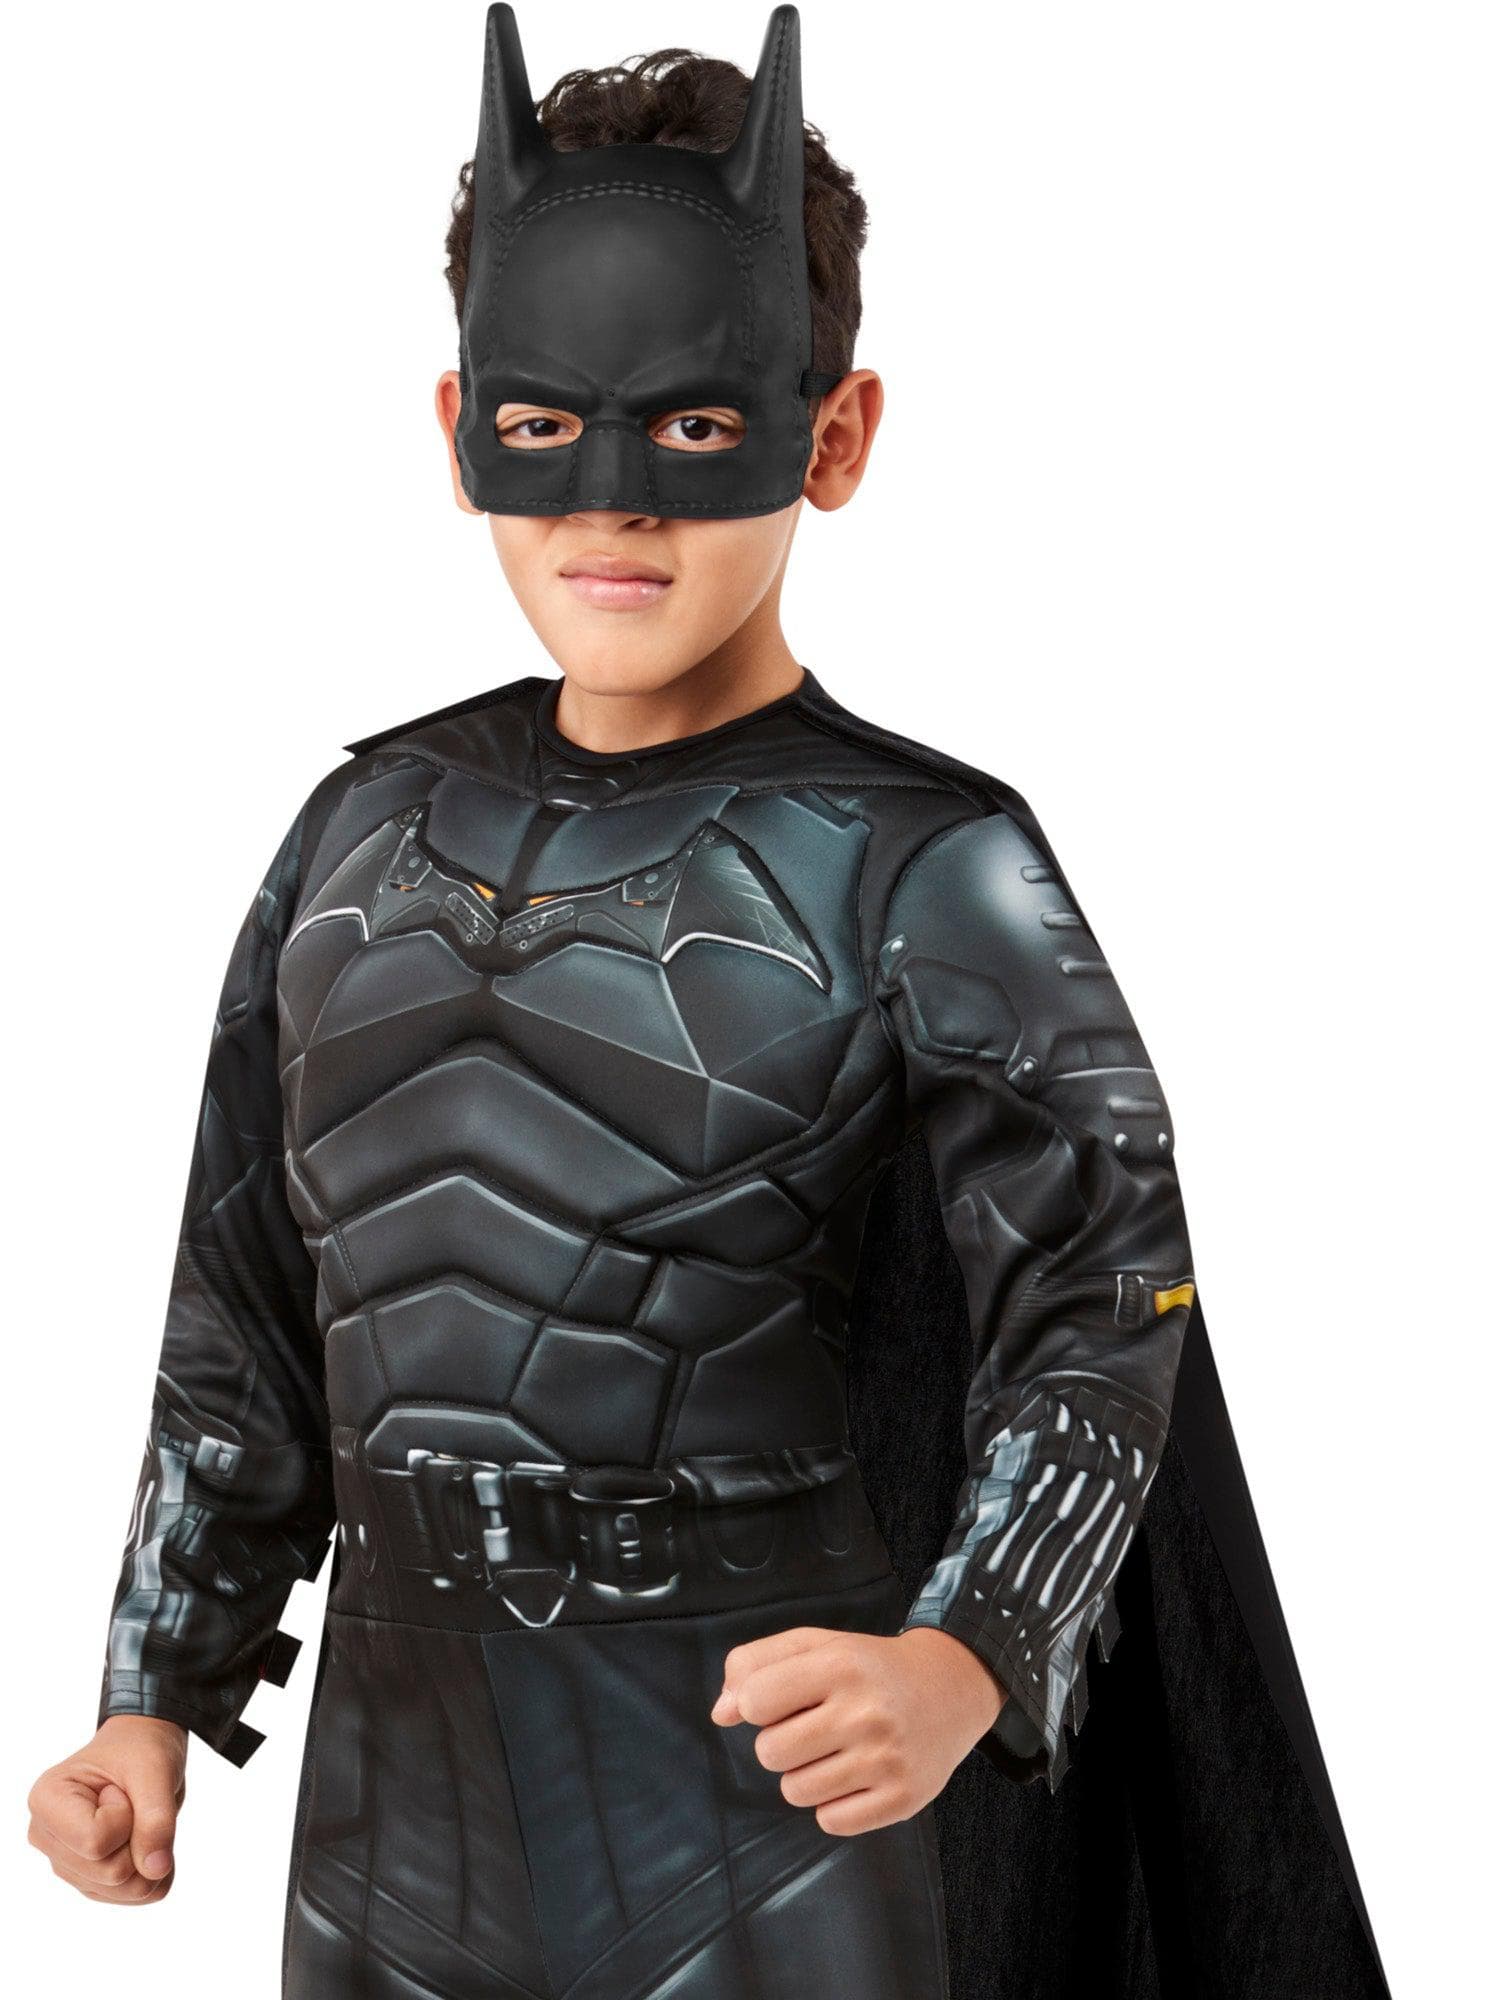 Kids' The Batman Half Mask - costumes.com